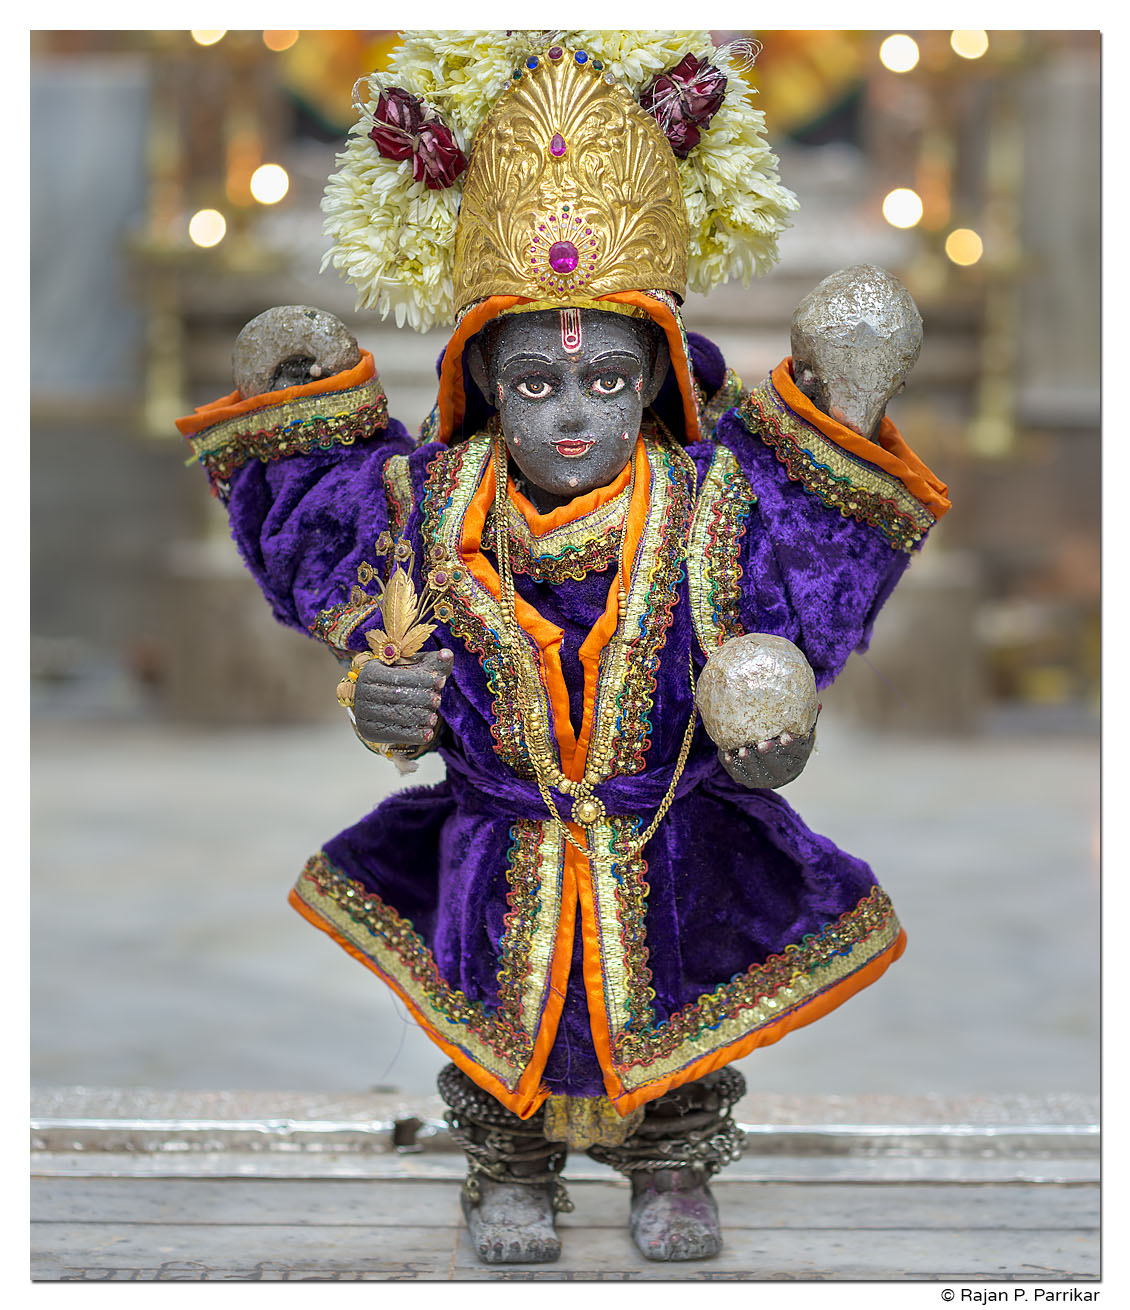 Utsav murthy of Krishna at Mashel temple, Goa